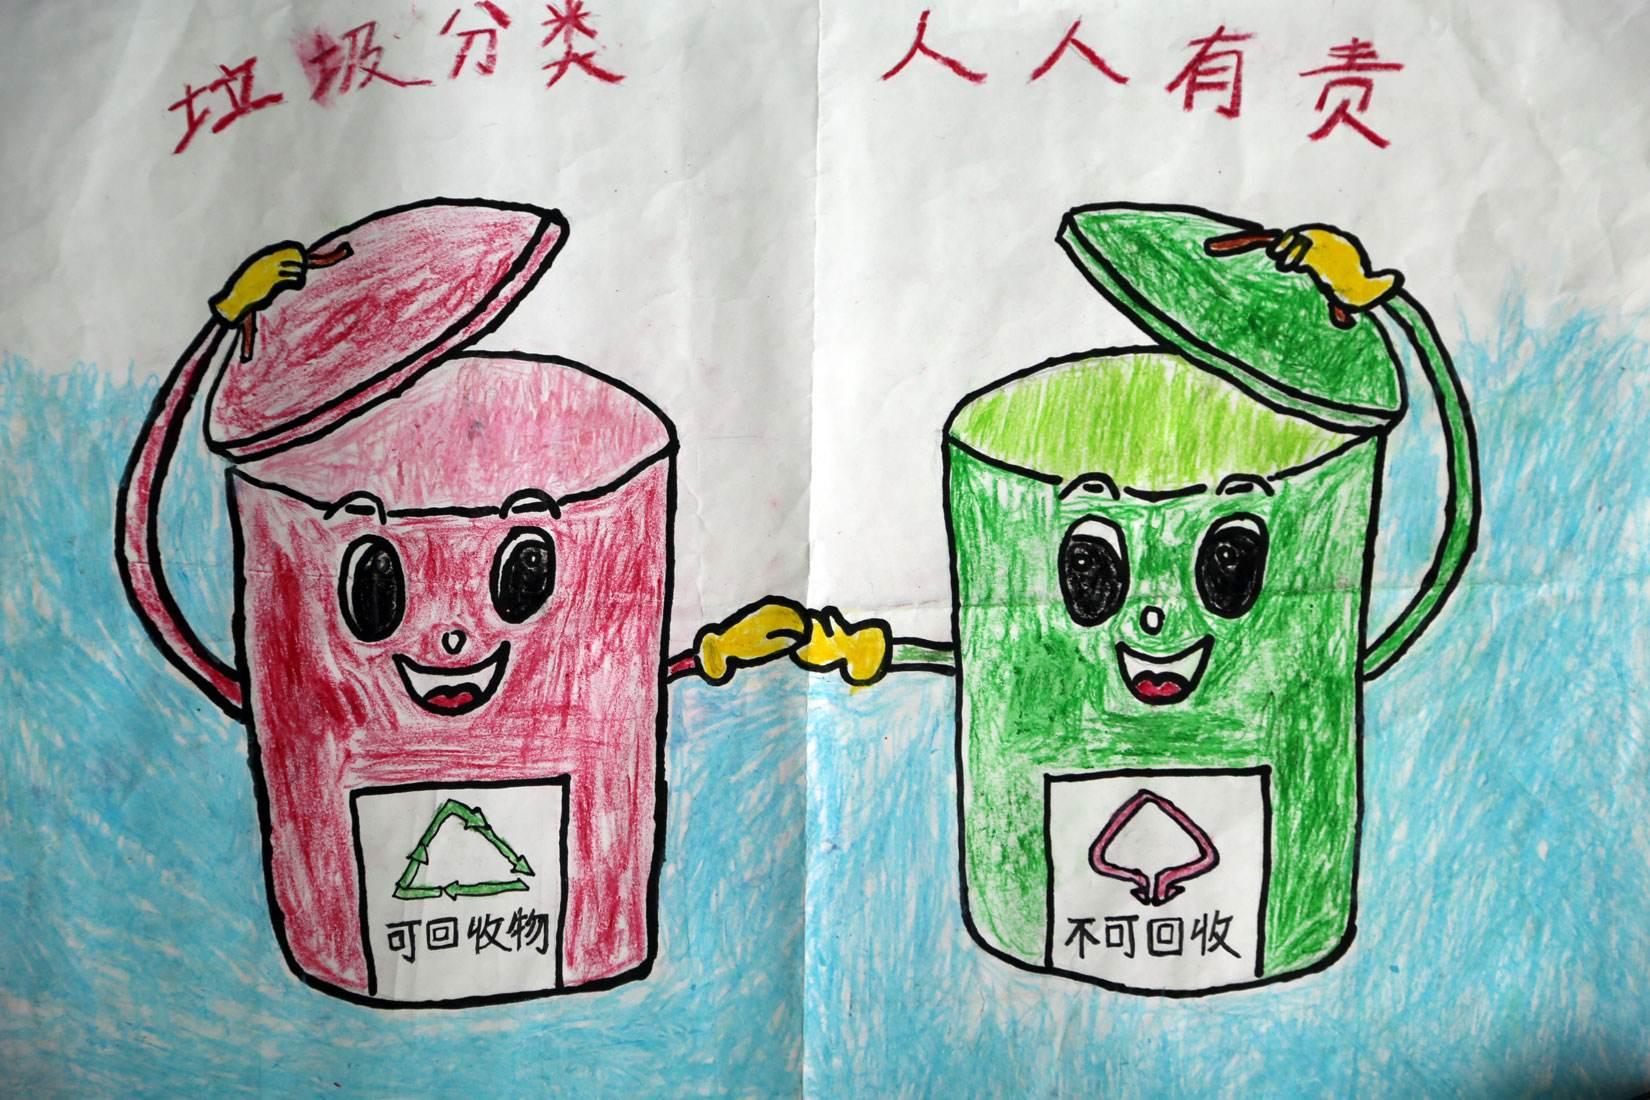 垃圾分类，有“画”说 ——上金瓯幼儿园垃圾分类宣传画绘制活动_小朋友